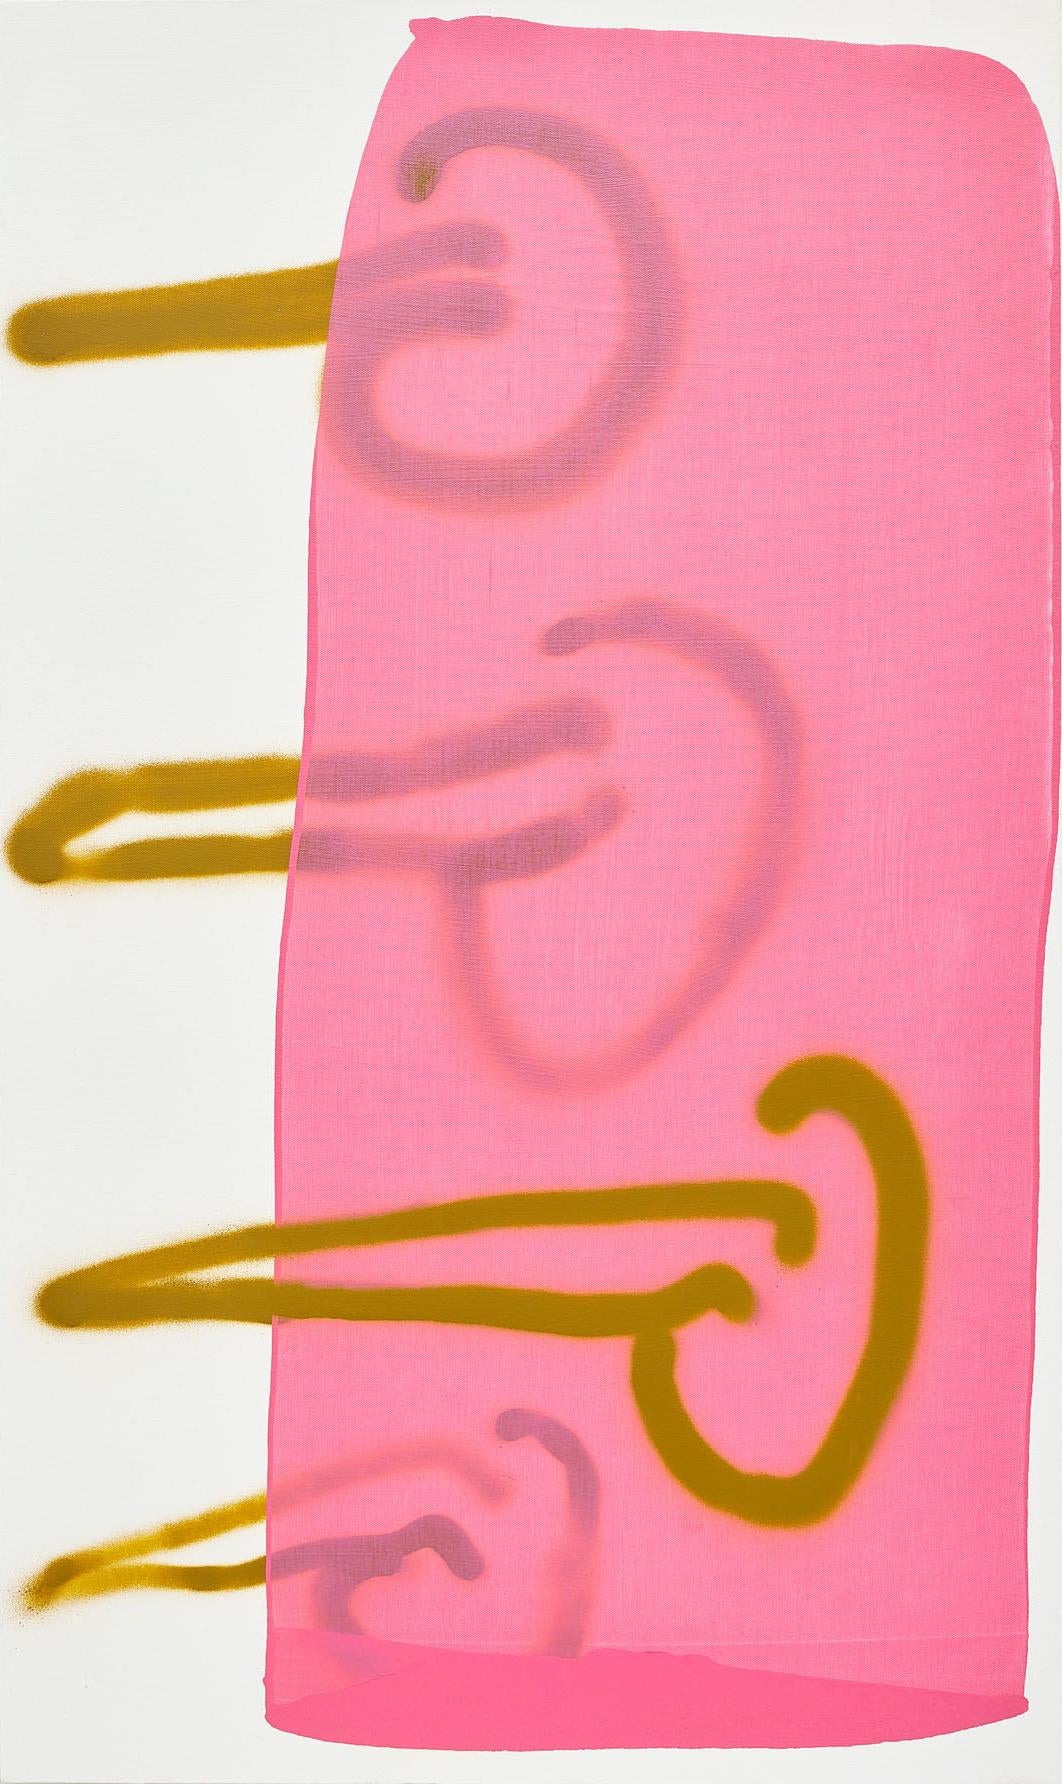 Mel Reese Abstract Painting – „“Misogyny“, zeitgenössische politische abstrakte Acryl- und Sprühfarbe in Rosa und Ockerfarbe